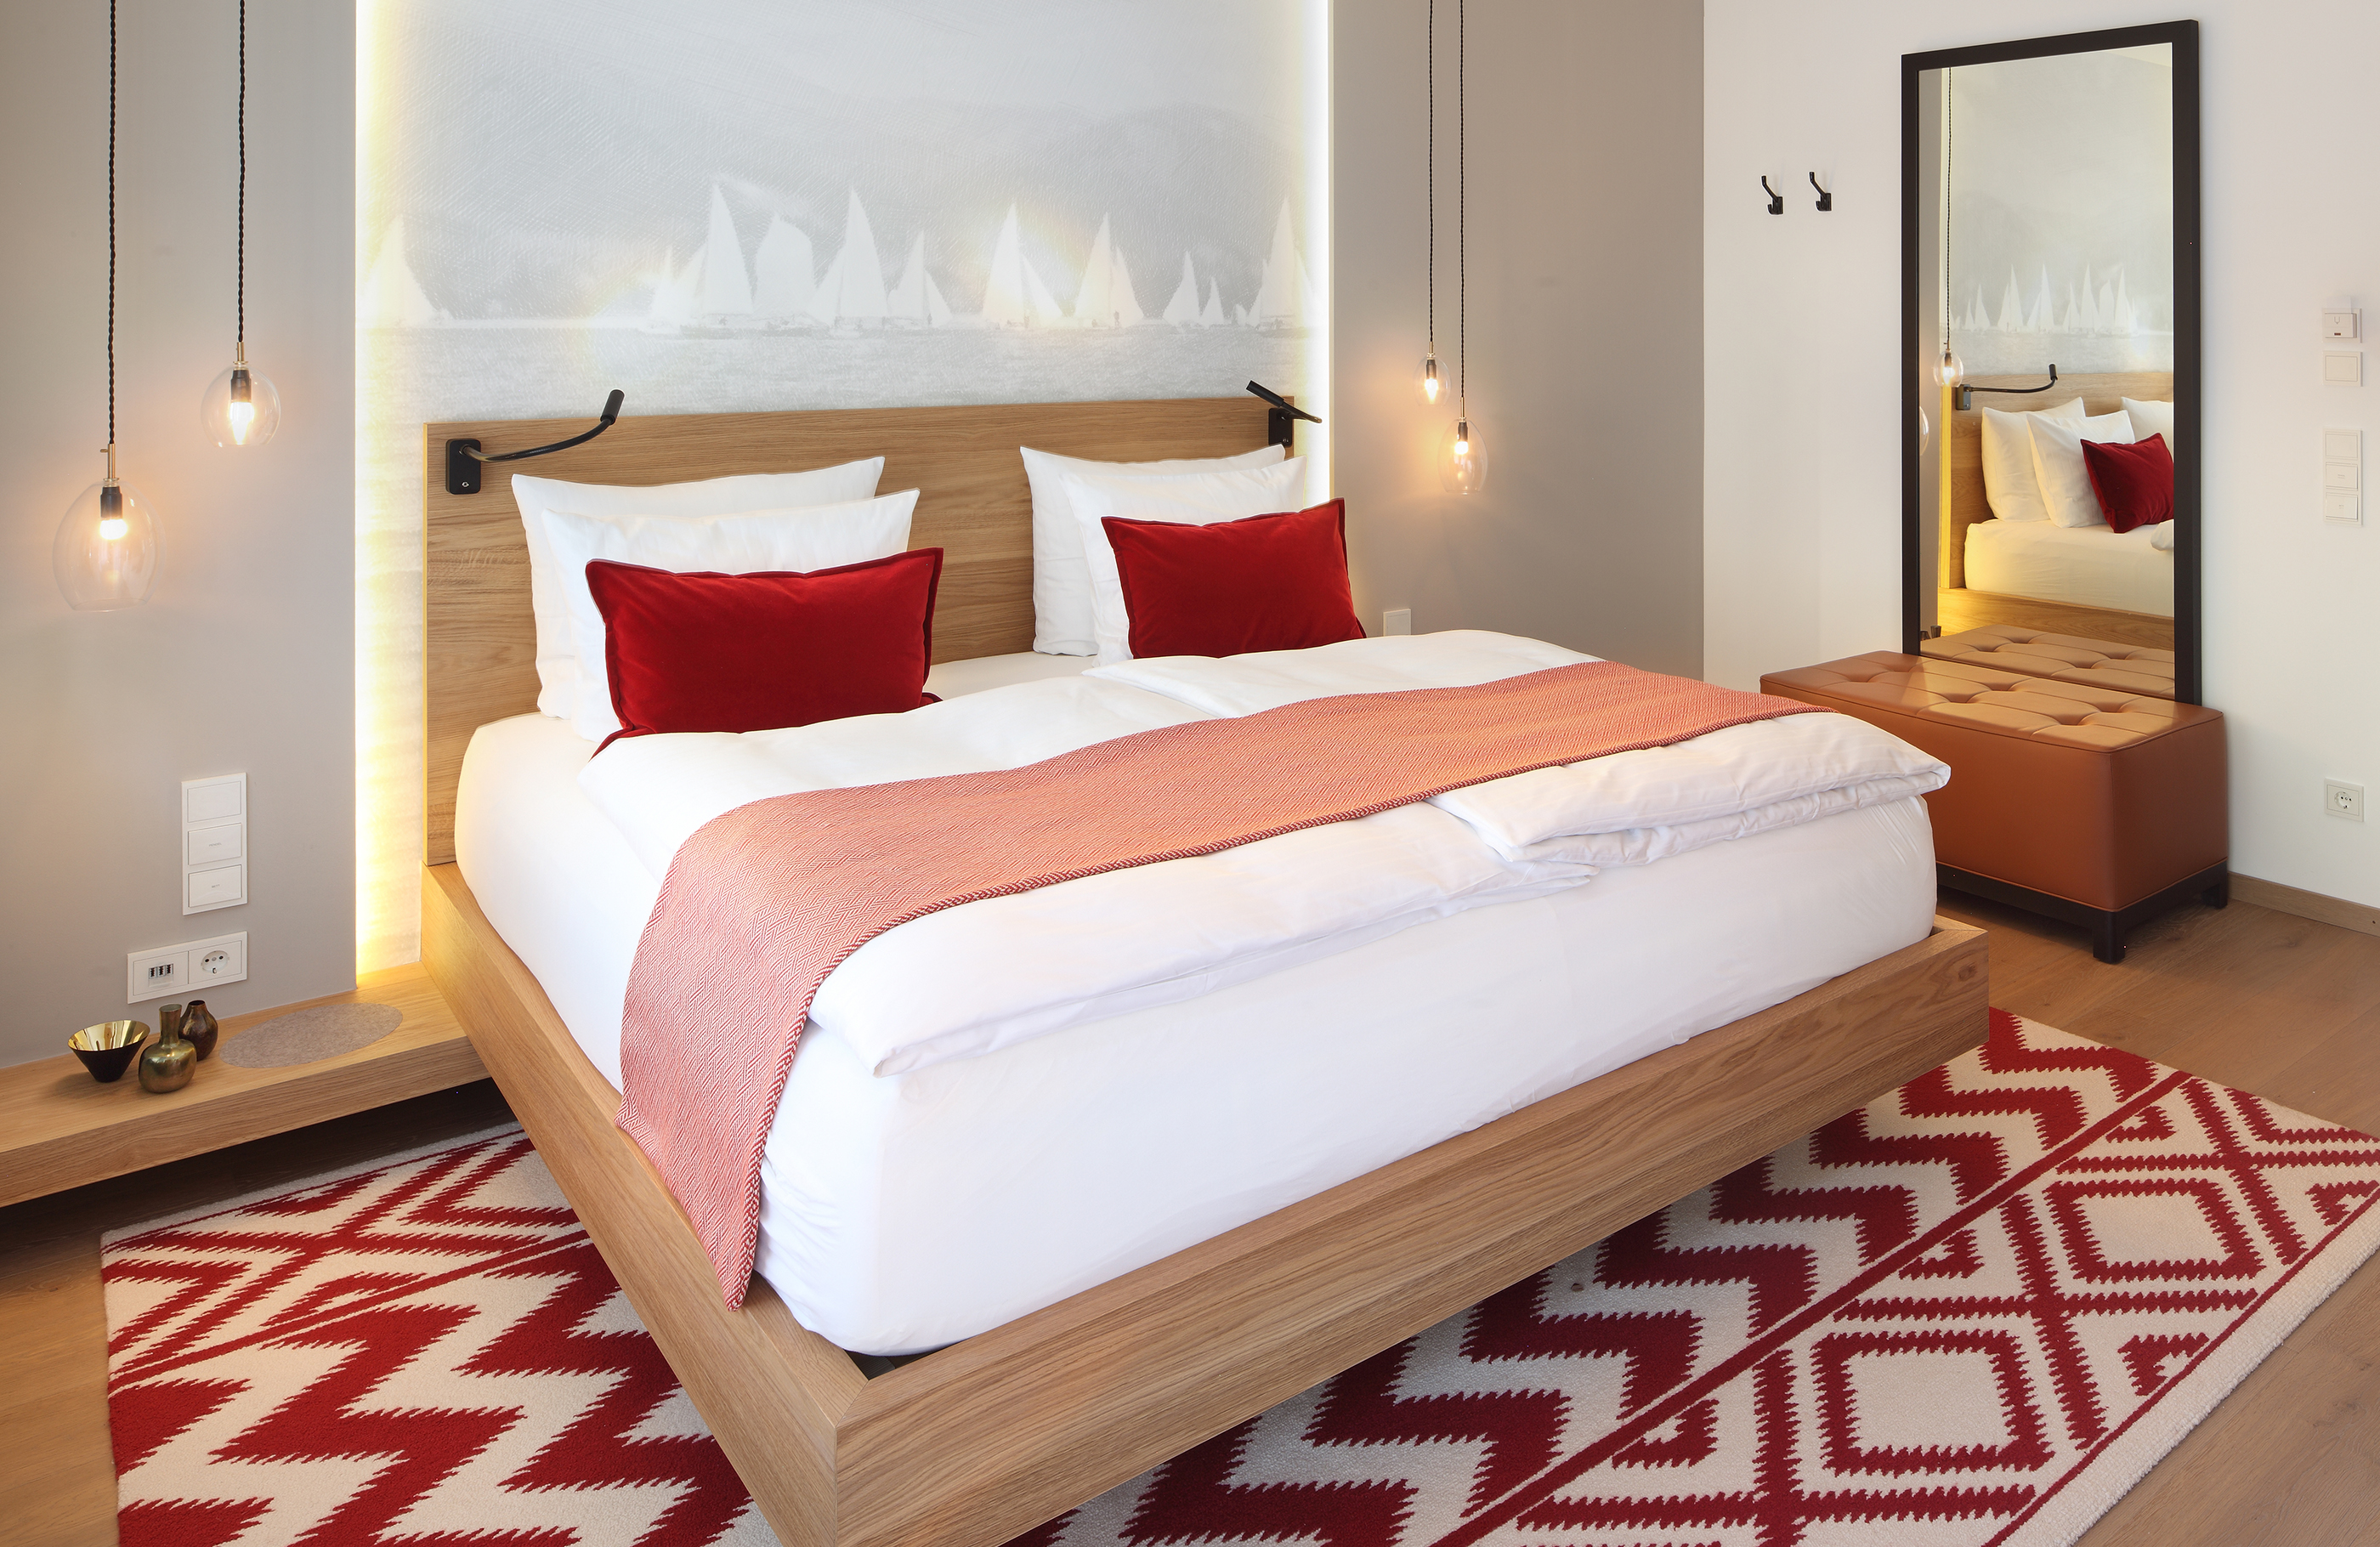 Aufnahme eines Doppelzimmers im Haus Tegernsee im Hotel Das Tegernsee mit einem großen, weiß bezogenem Doppelbett mit roten Dekokissen in der Raummitte und einem  weiß-roten Teppich.